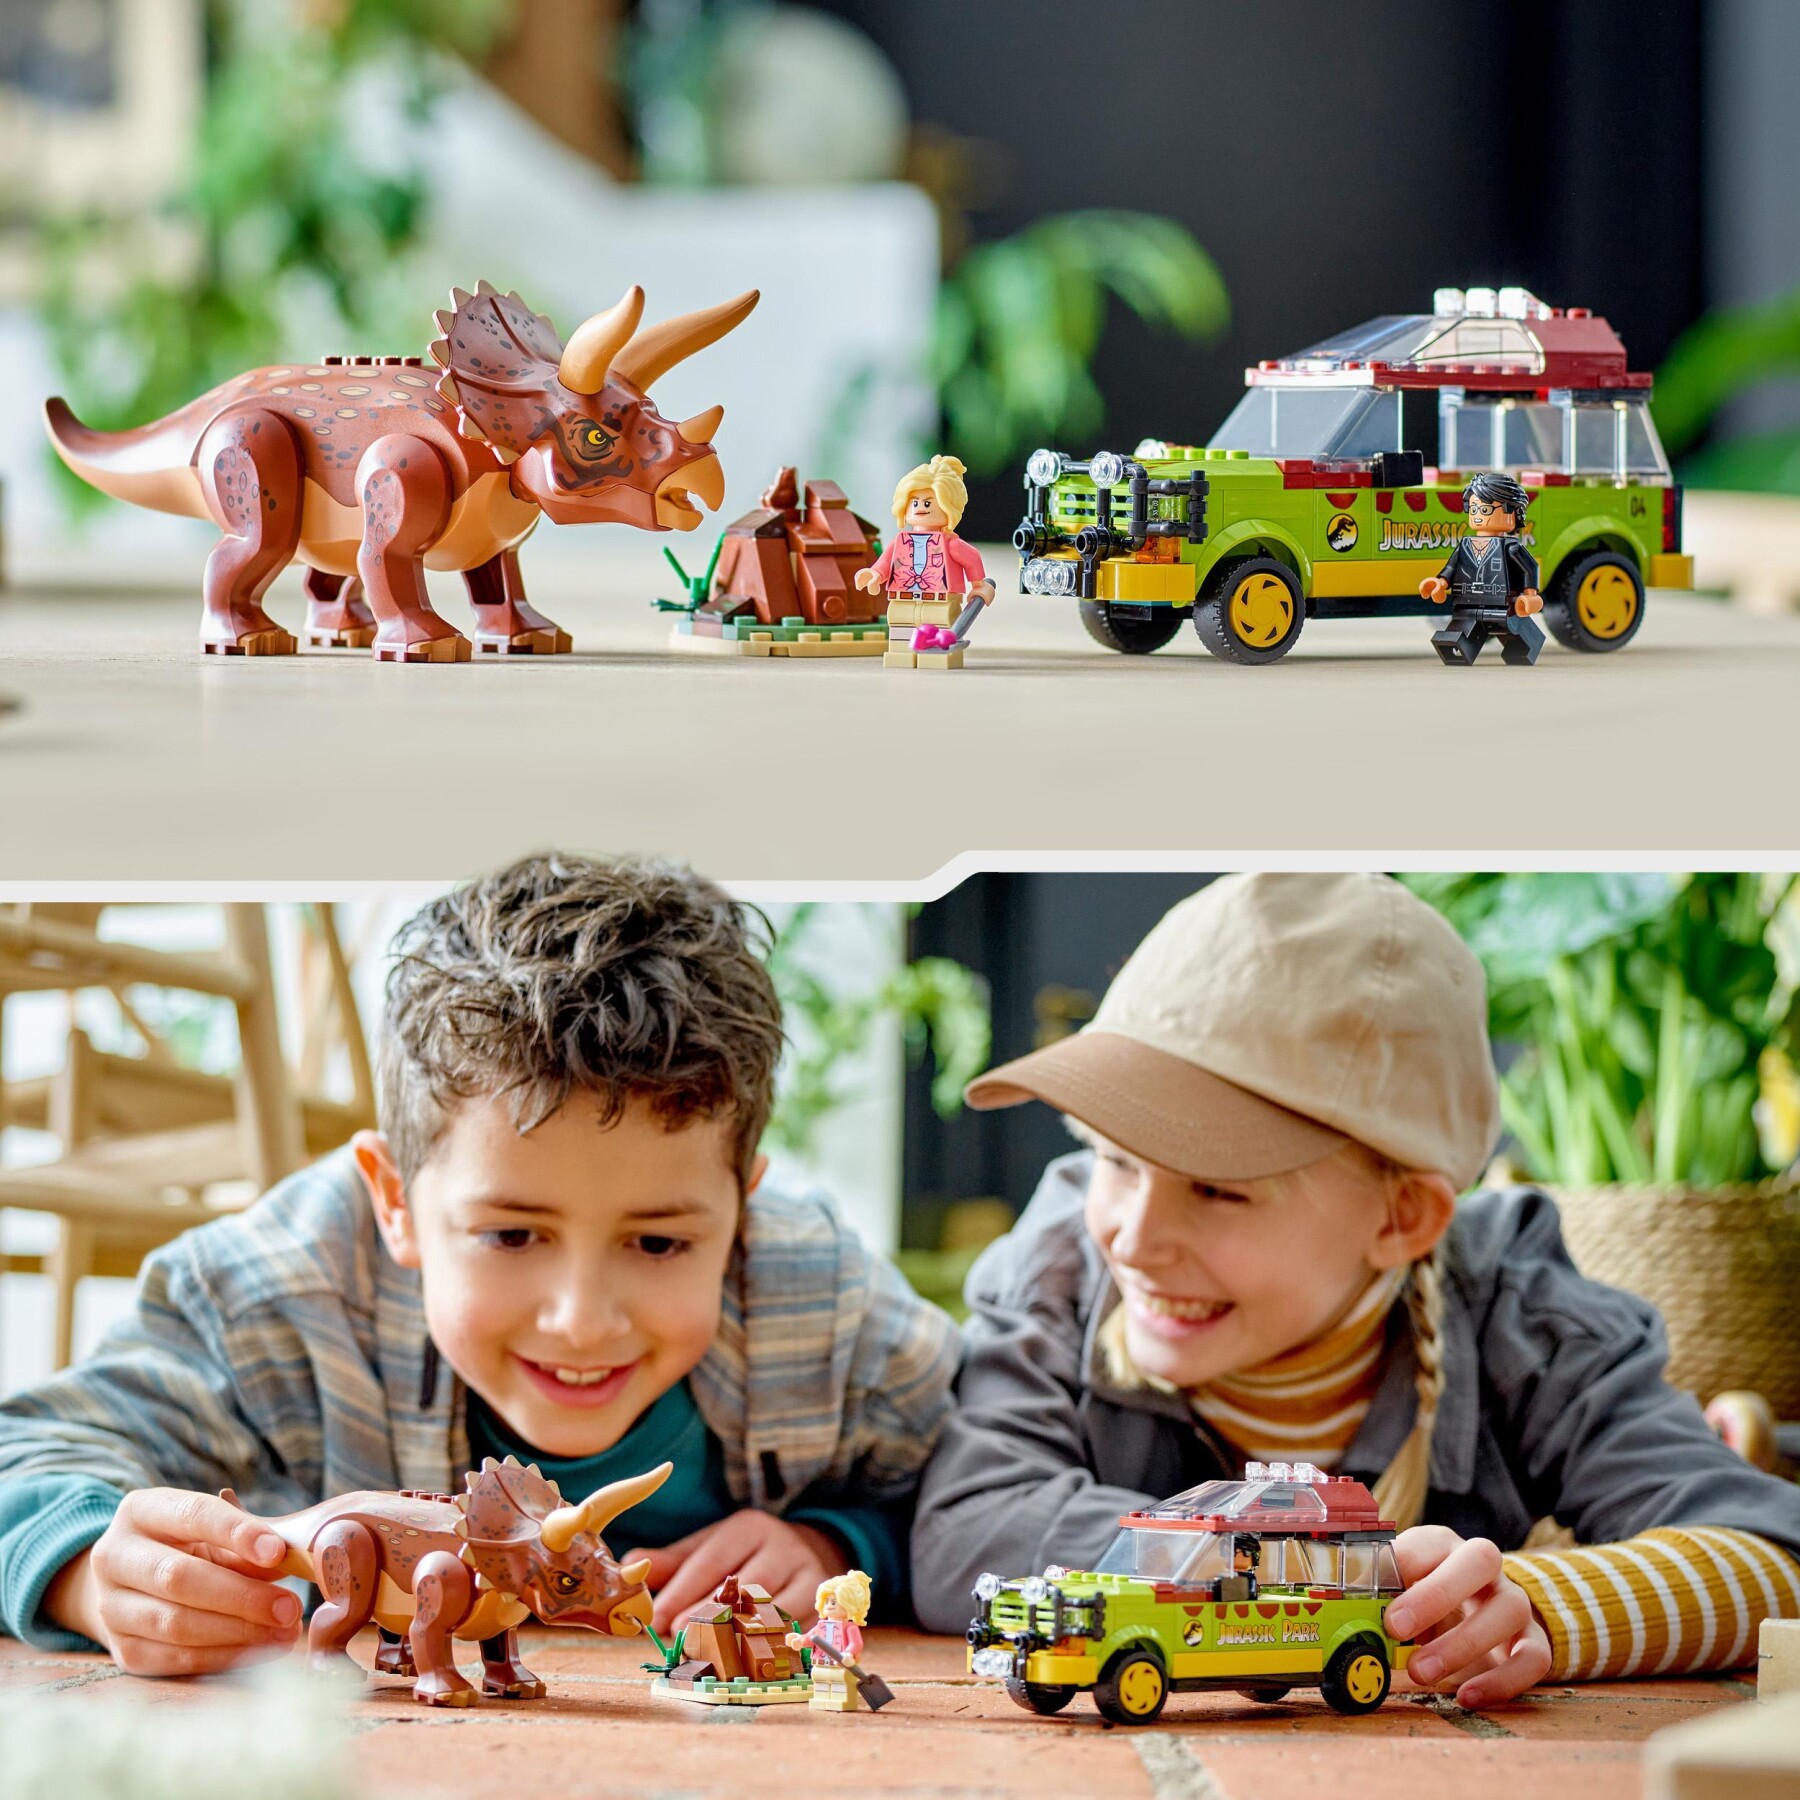 LEGO Jurassic Park 76959 La Ricerca Del Triceratopo, Collezione 30° Anniversario - Jurassic World, LEGO